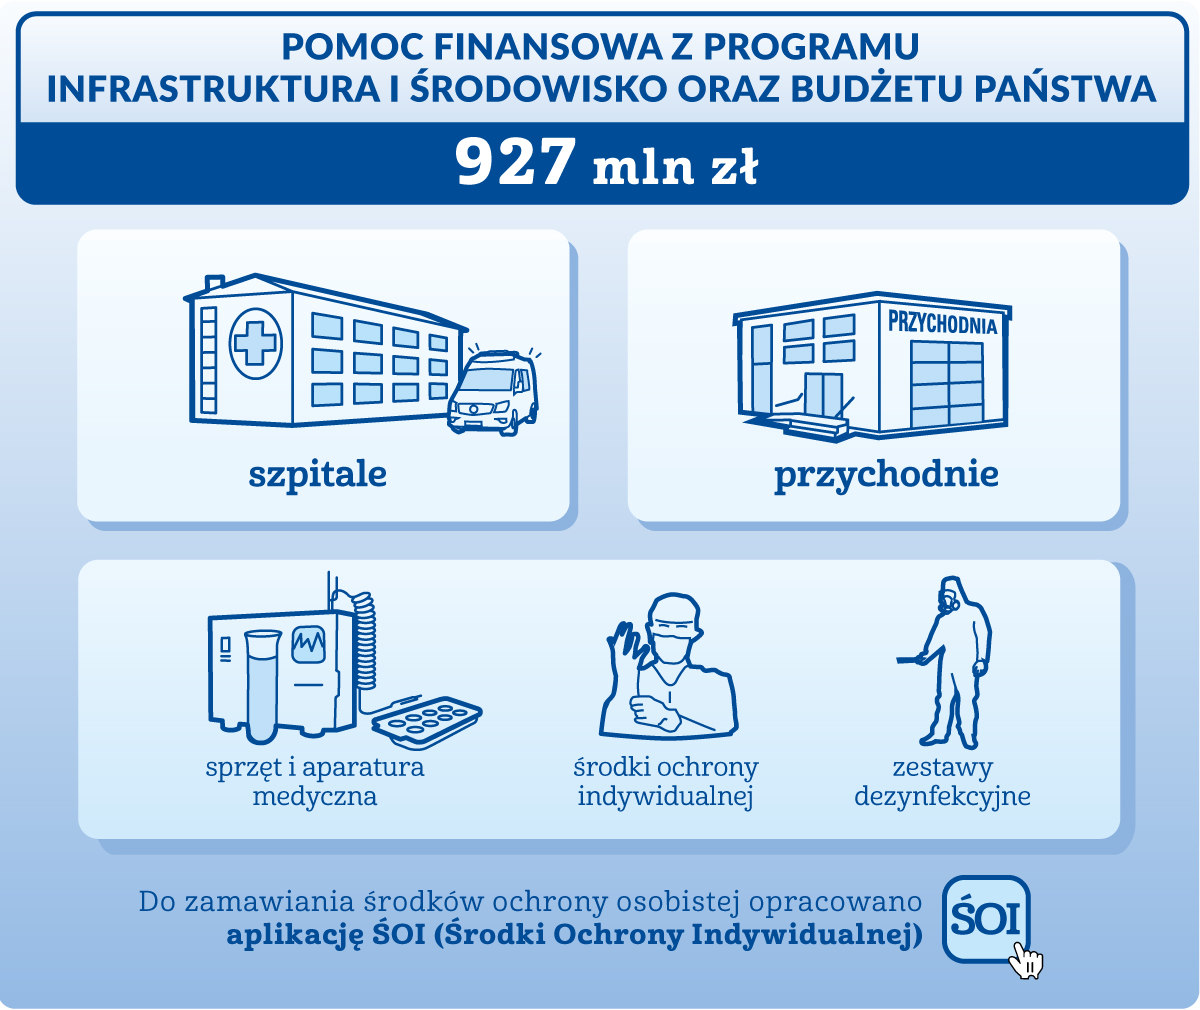 Pomoc finansowa z Programu Infrastruktura i Środowisko - 927 milionów złotych przekazano szpitalom i przychodniom na: sprzęt i aparaturę medyczną, środki ochrony indywidualnej, zestawy dezynfekcyjne